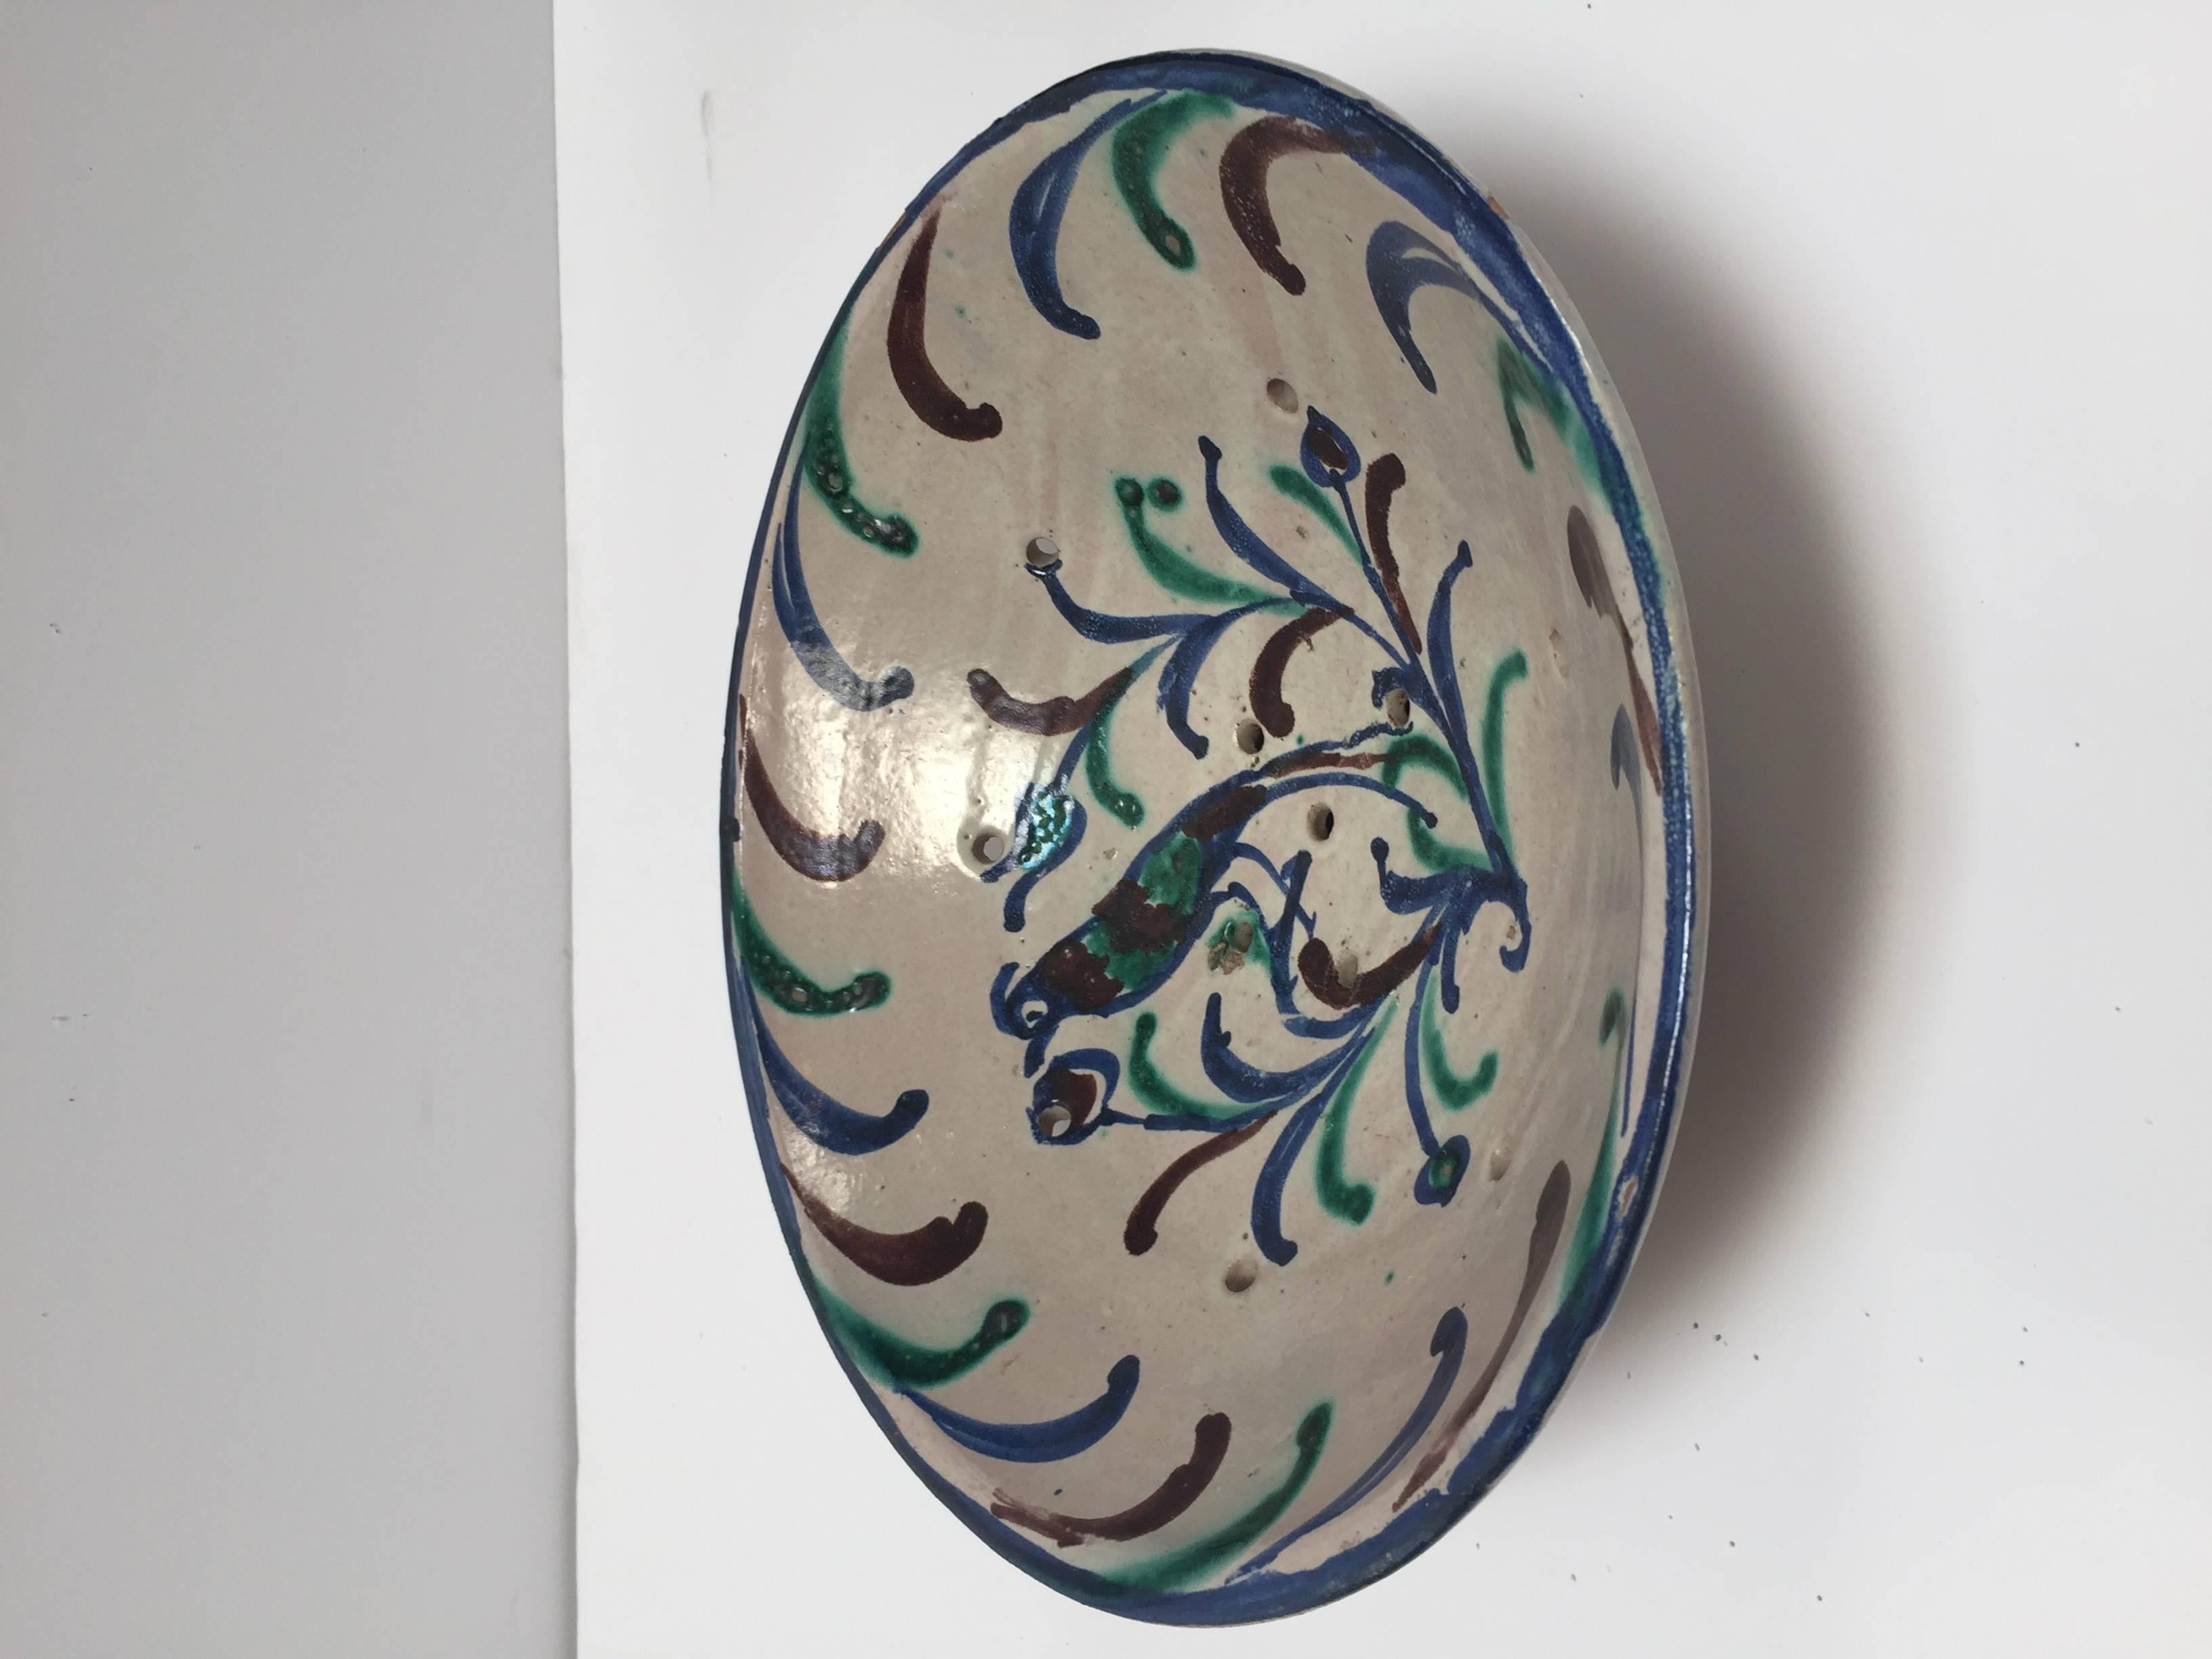 Turkish Ceramic Strainer Fruit Bowl (Handgefertigt)